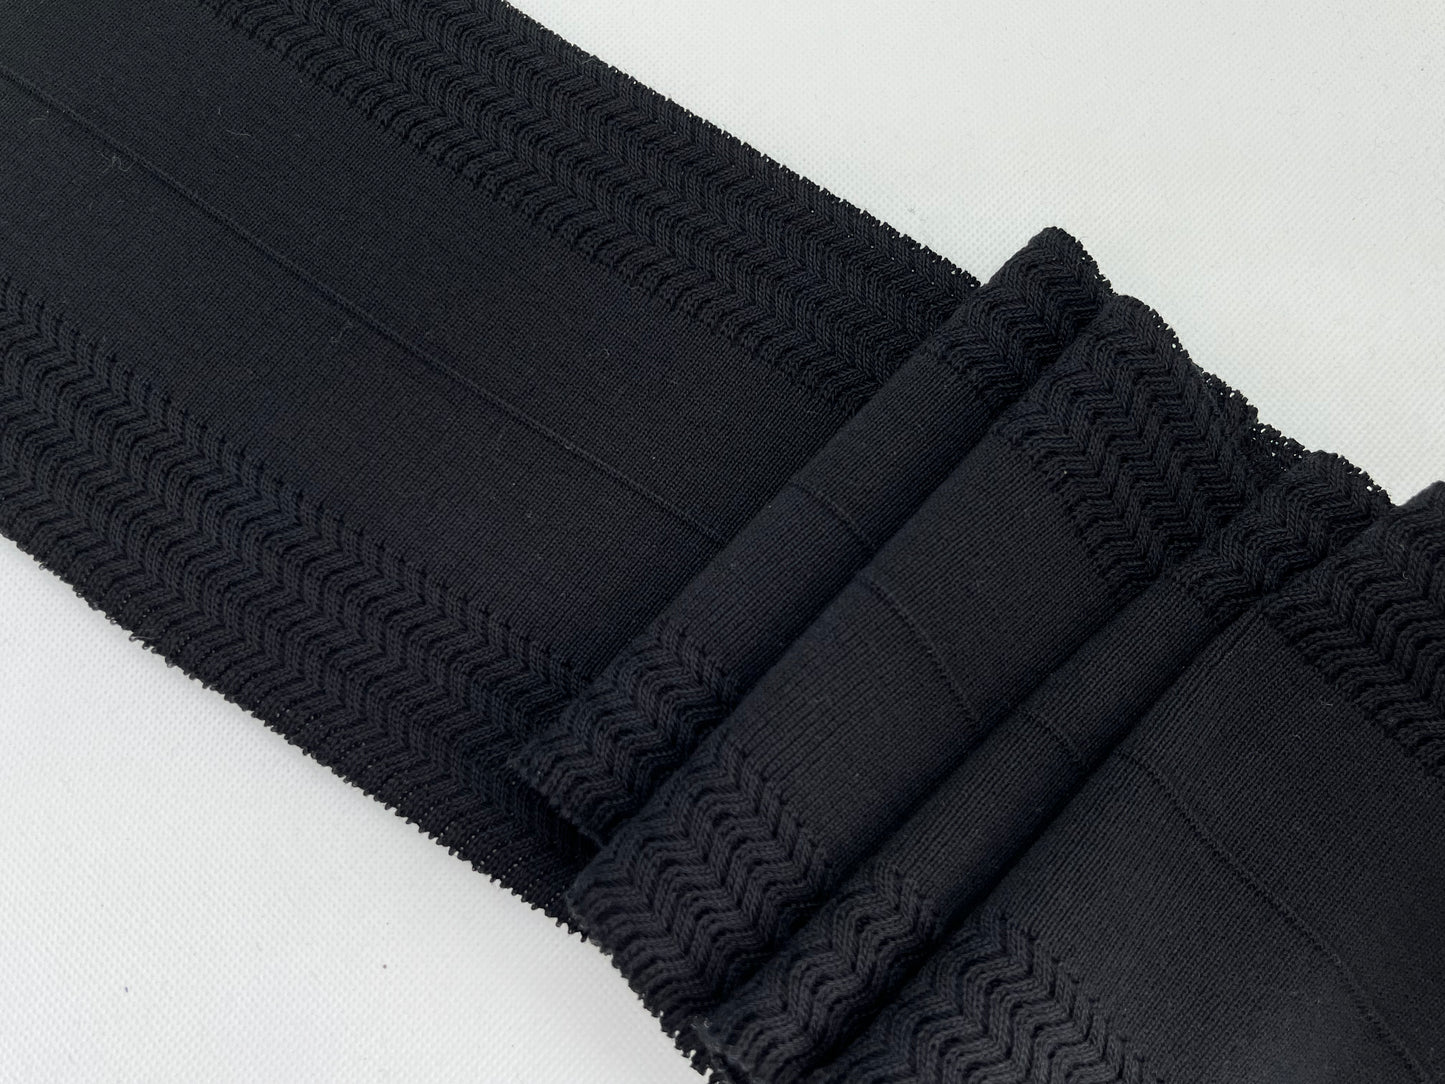 Bord-côte 100% coton avec motifs en relief